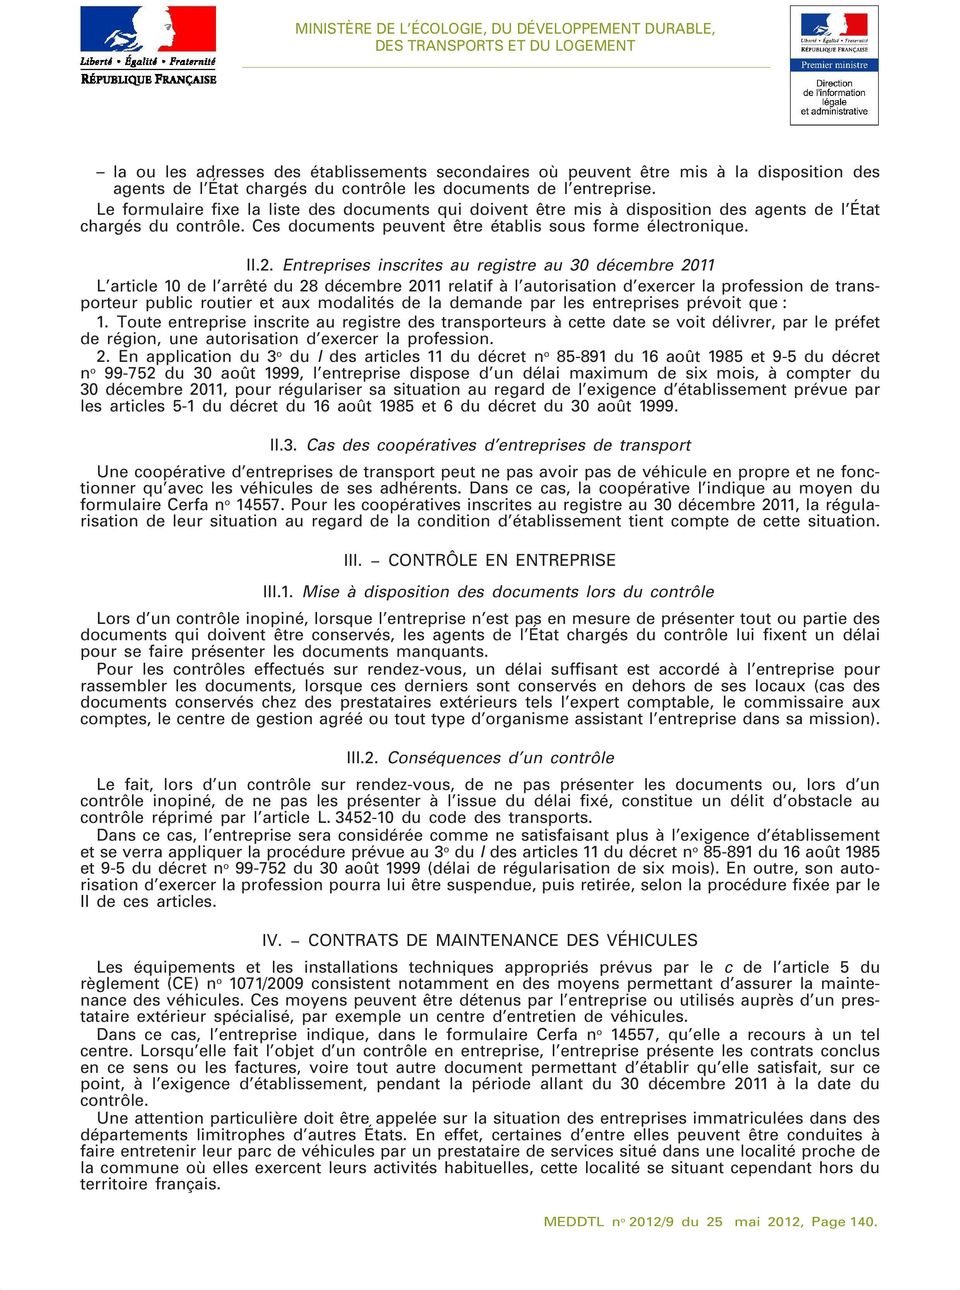 Entreprises inscrites au registre au 30 décembre 2011 L article 10 de l arrêté du 28 décembre 2011 relatif à l autorisation d exercer la profession de transporteur public routier et aux modalités de